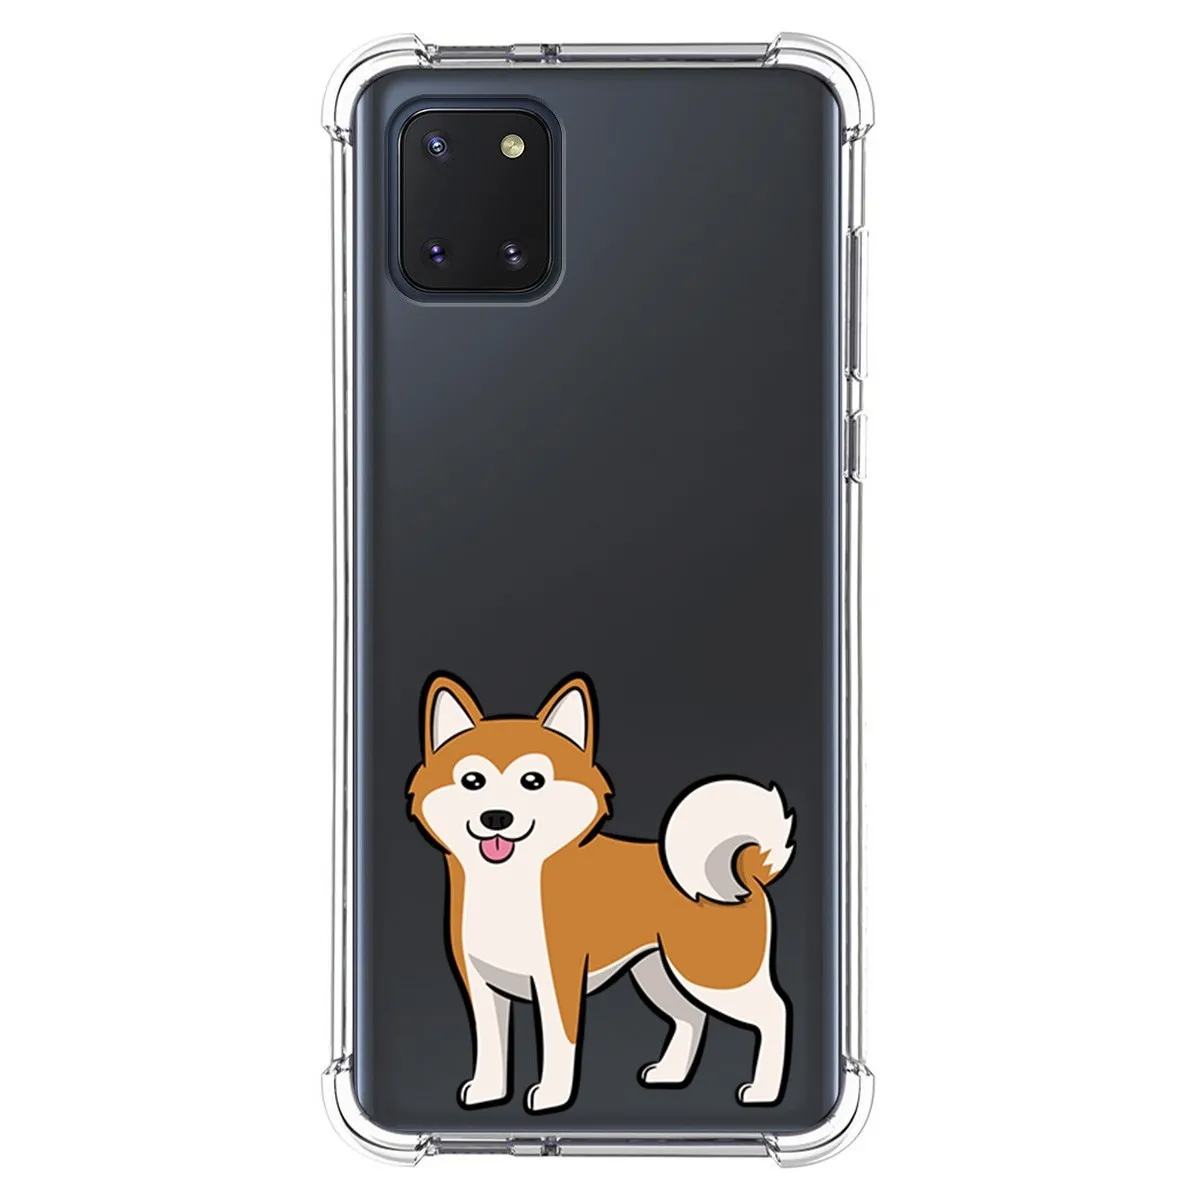 Funda Silicona Antigolpes para Samsung Galaxy Note 10 Lite diseño Perros 02 Dibujos